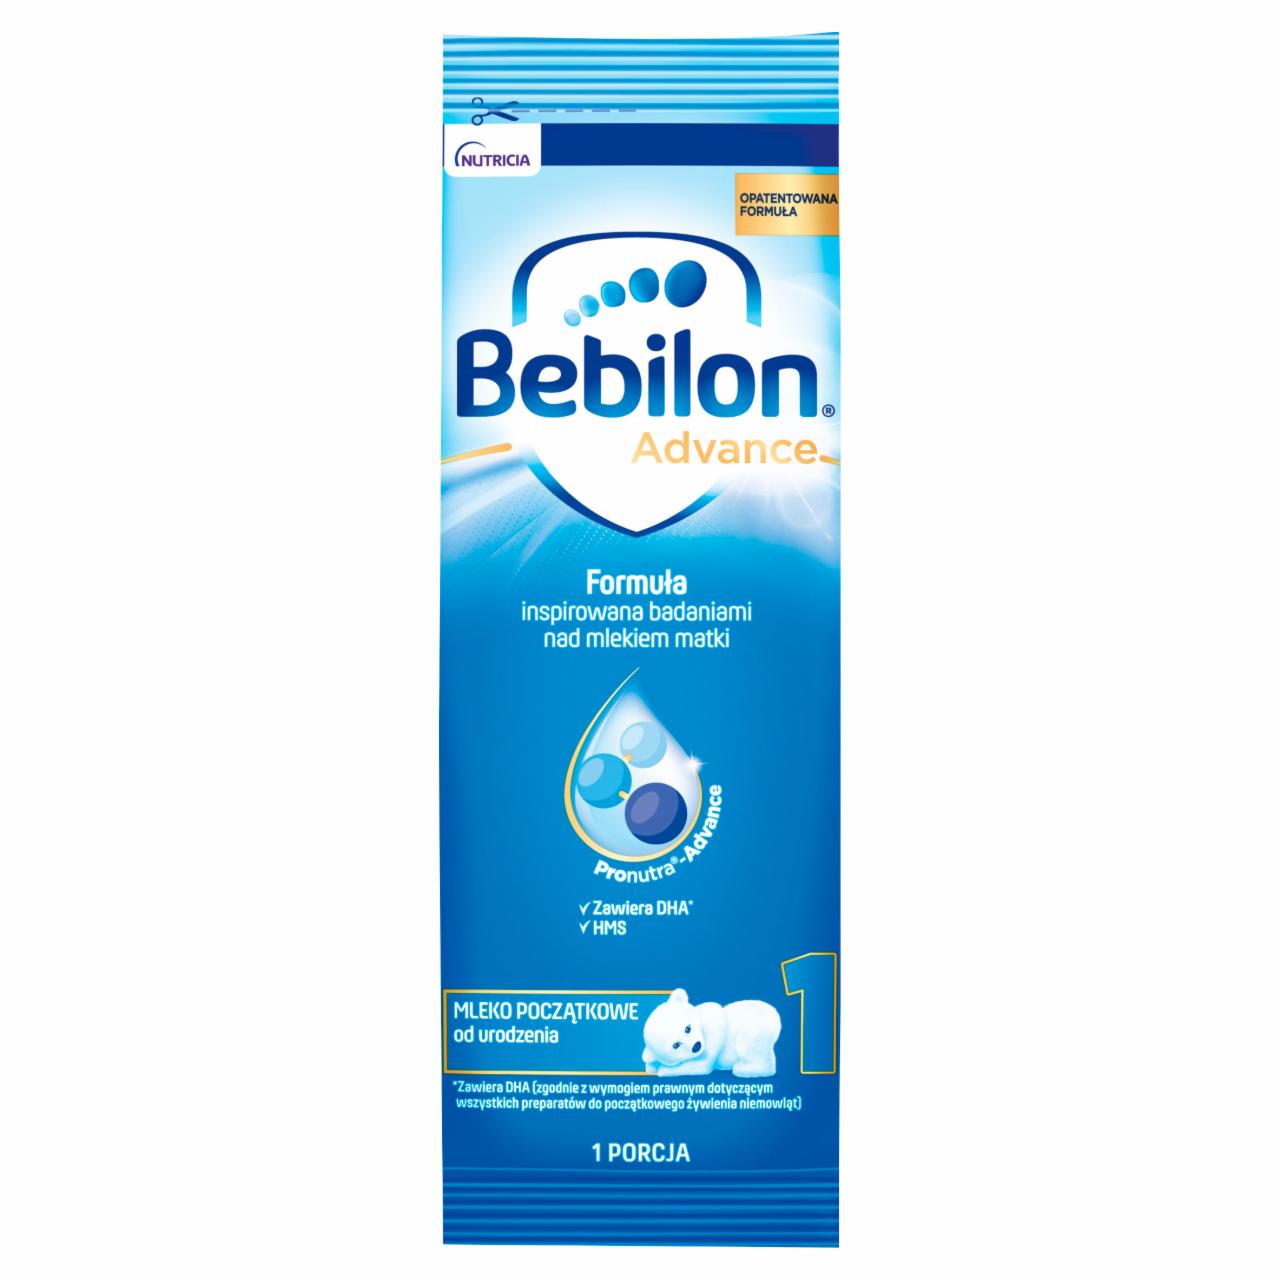 Zdjęcia - Bebilon 1 Advance Pronutra Mleko początkowe od urodzenia 27,6 g